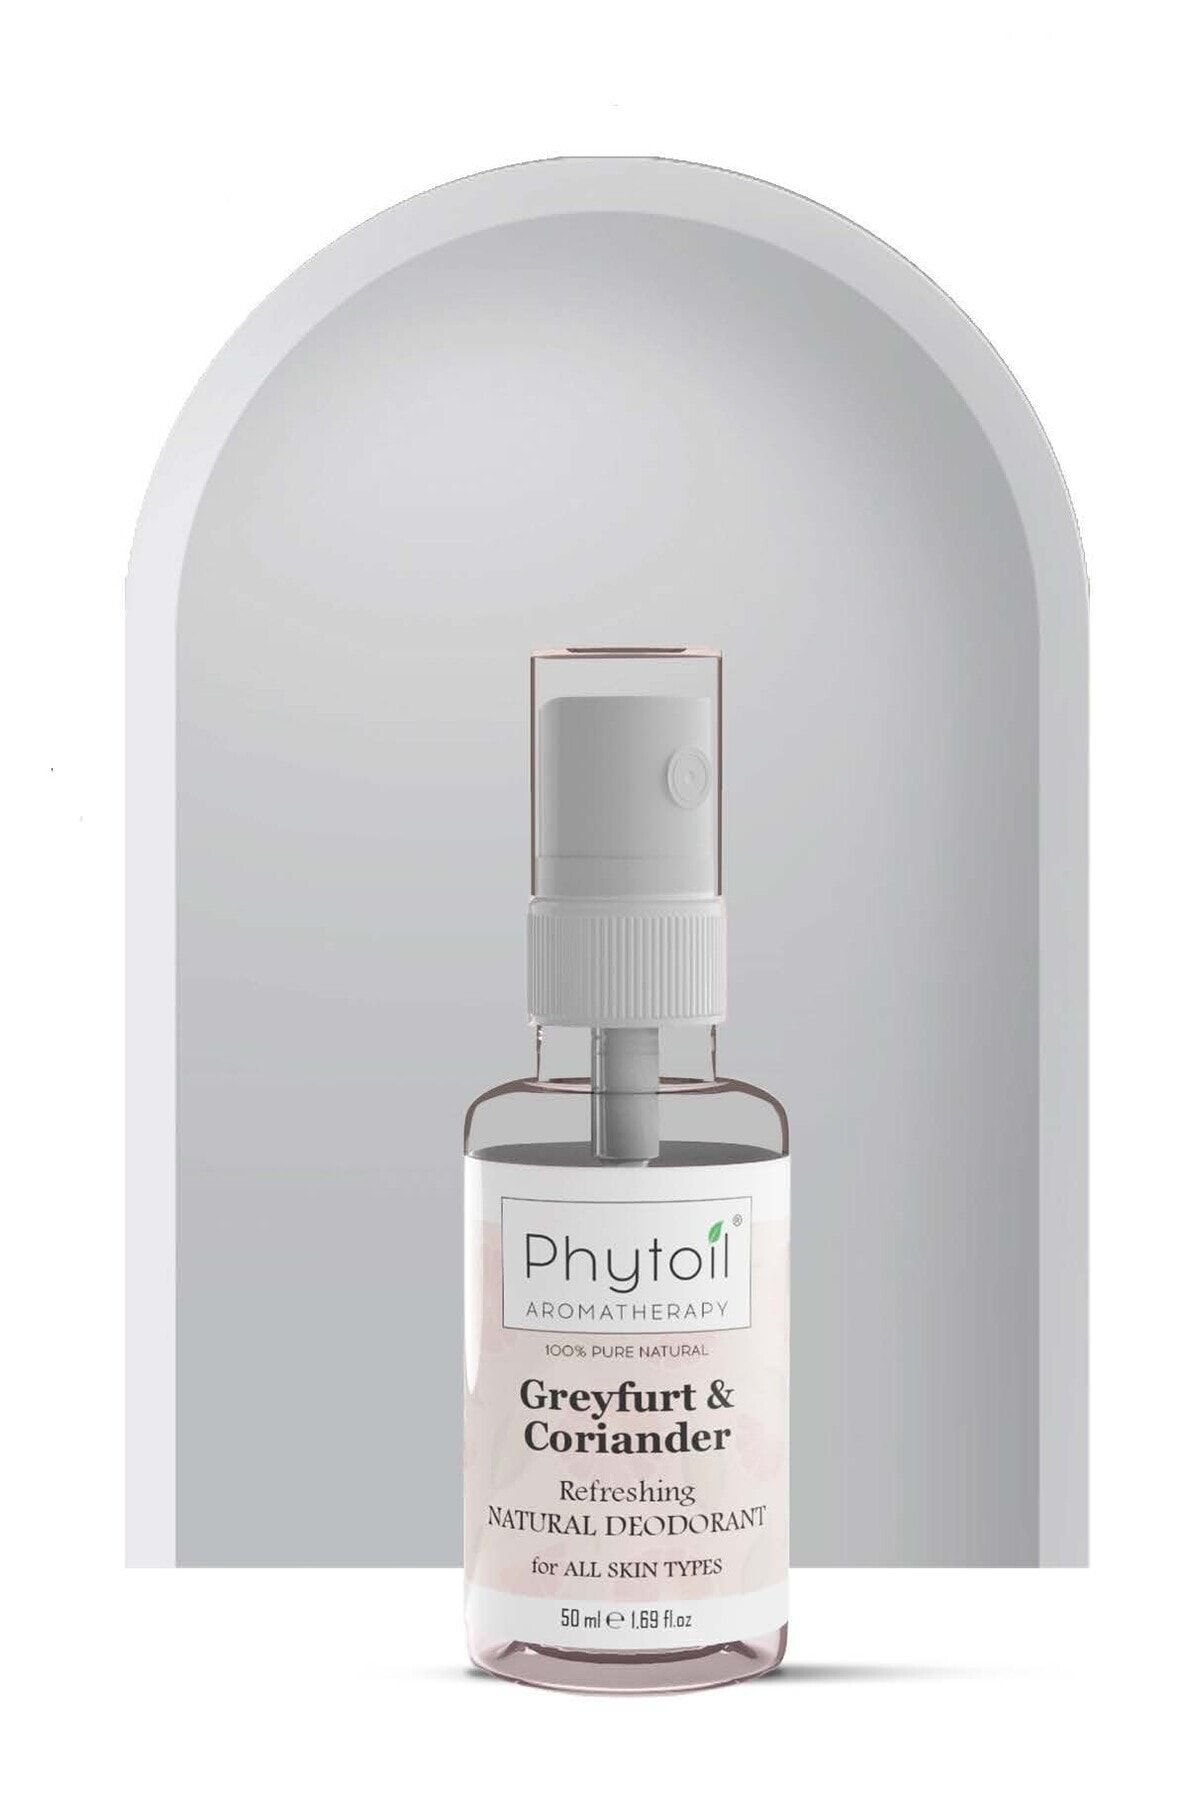 phytoil Greyfurtlu Tüm Vücut Için Al+ Tuzu Içermeyen Ter Ve Koku Önleyici Organik Alkolsüz Deosprey 50ml